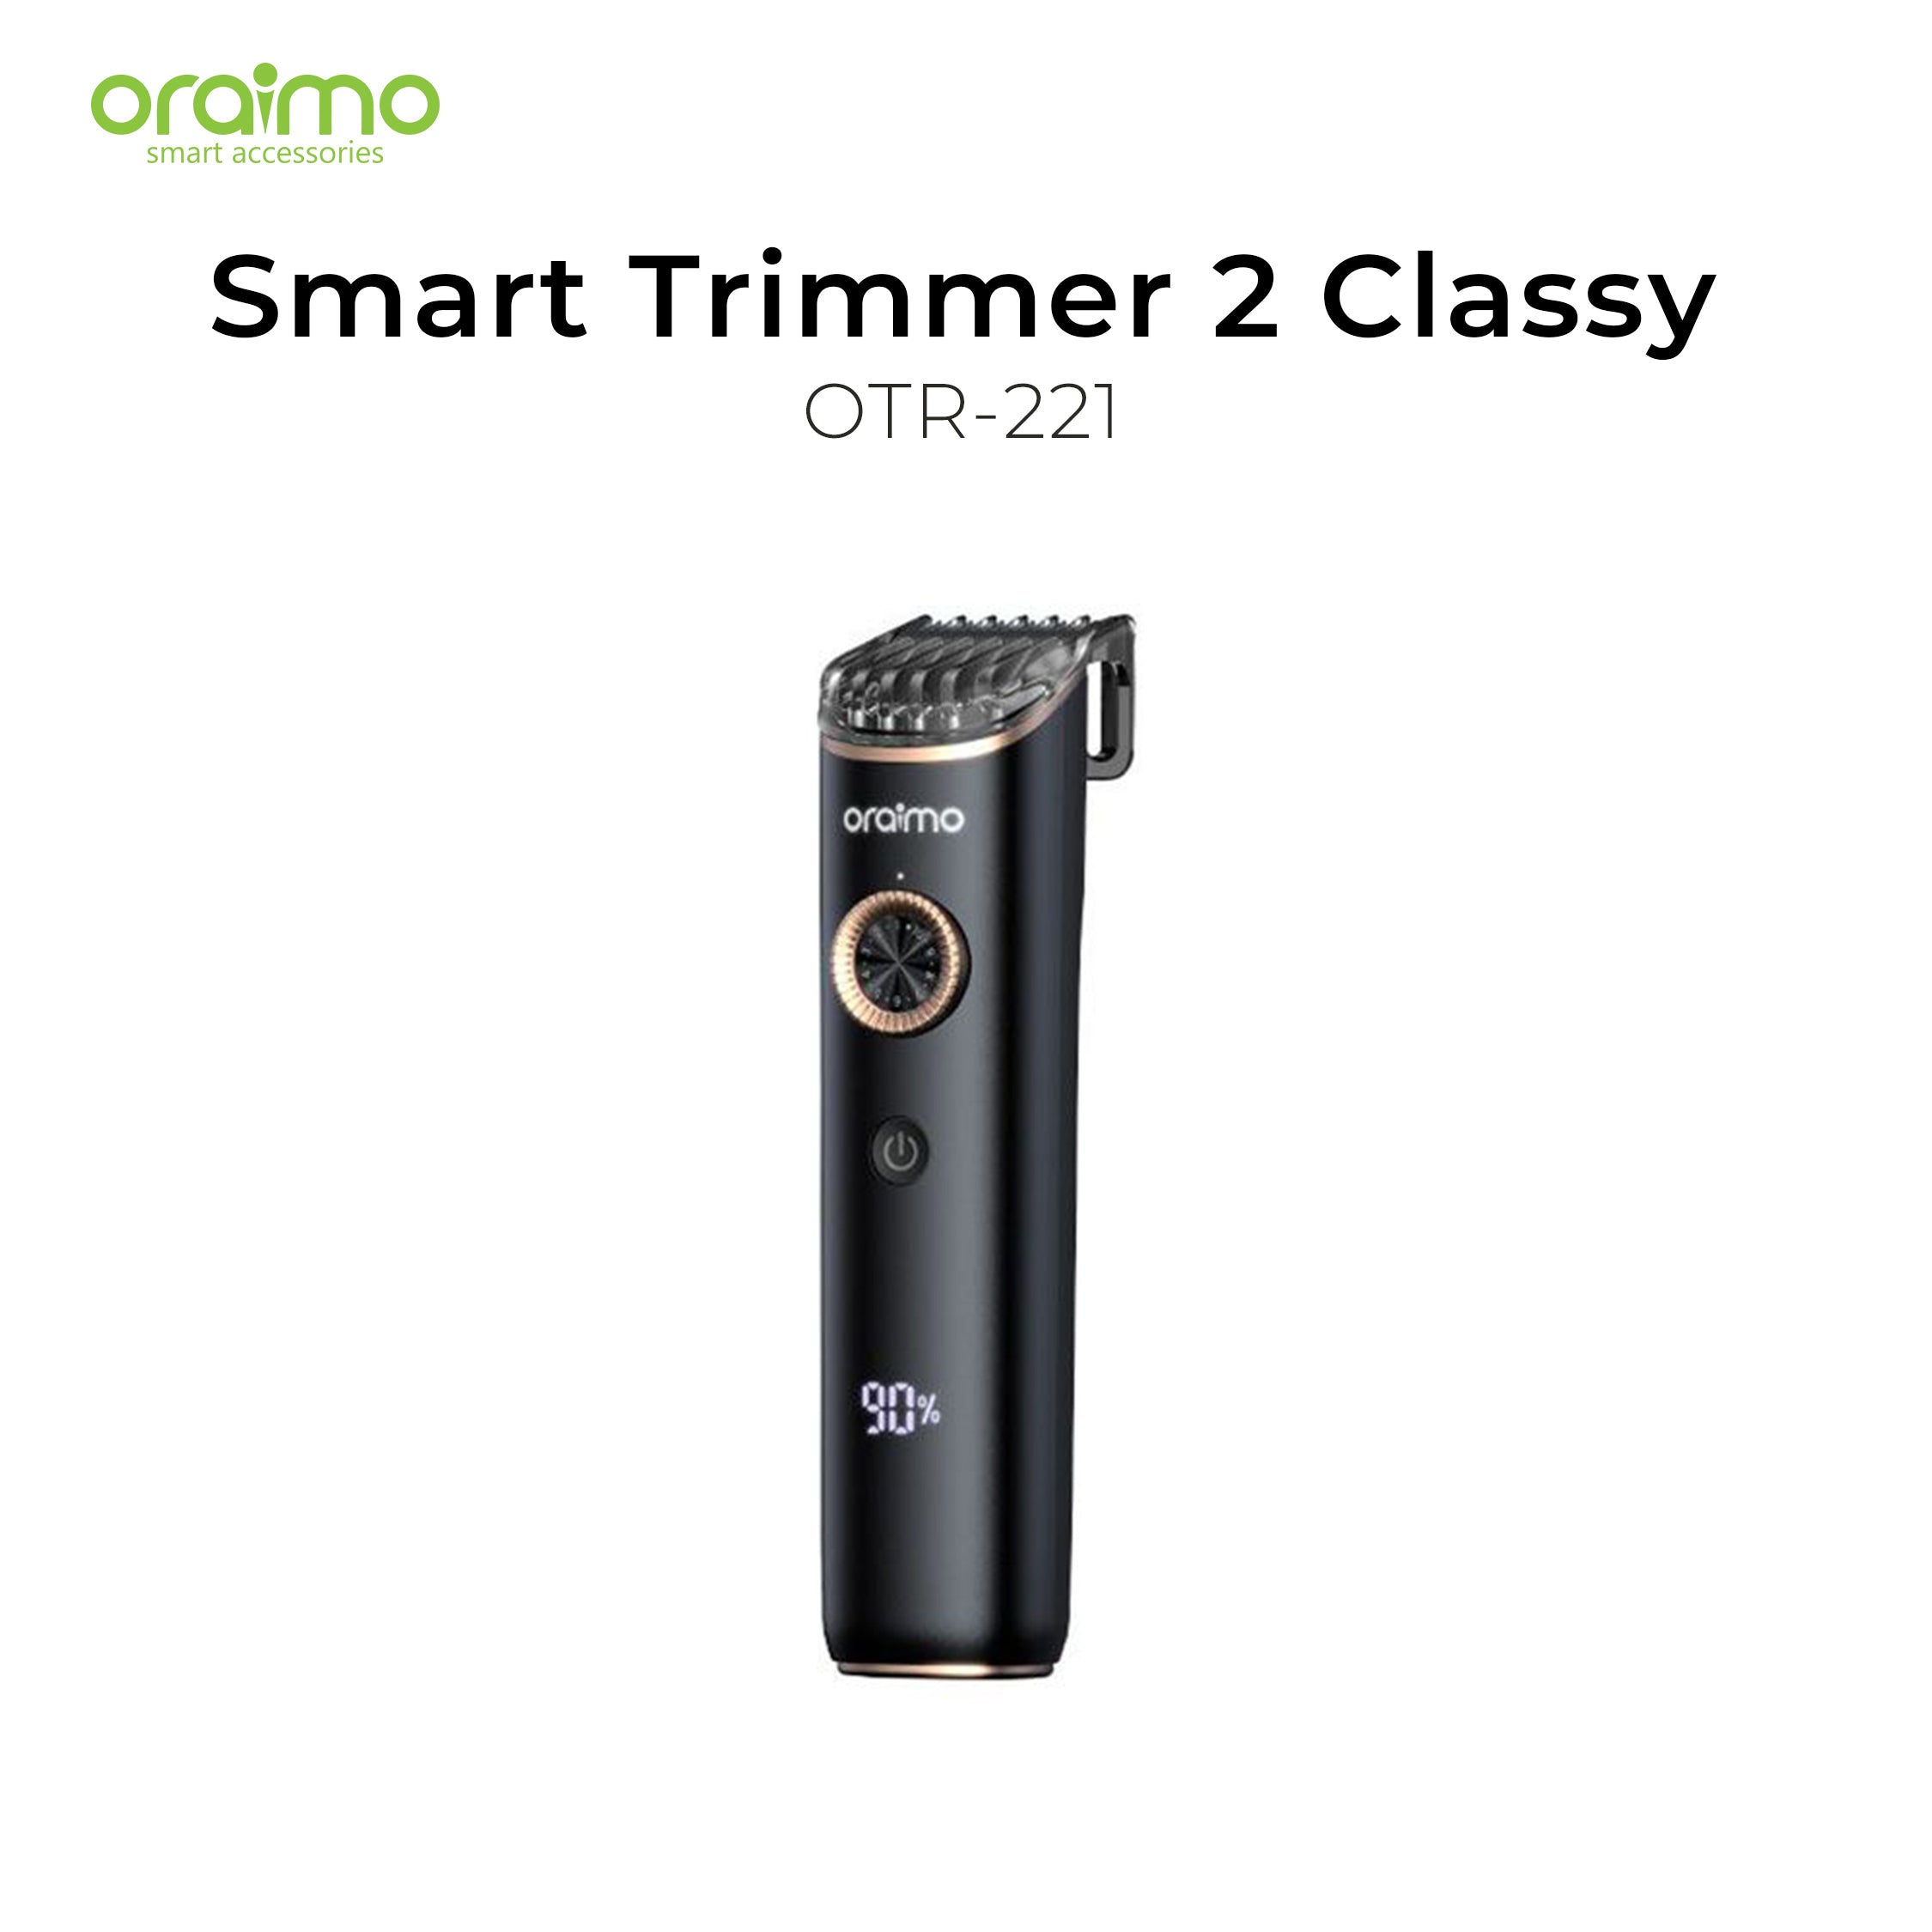 Oraimo Smart Trimmer 2 Classy OTR-221